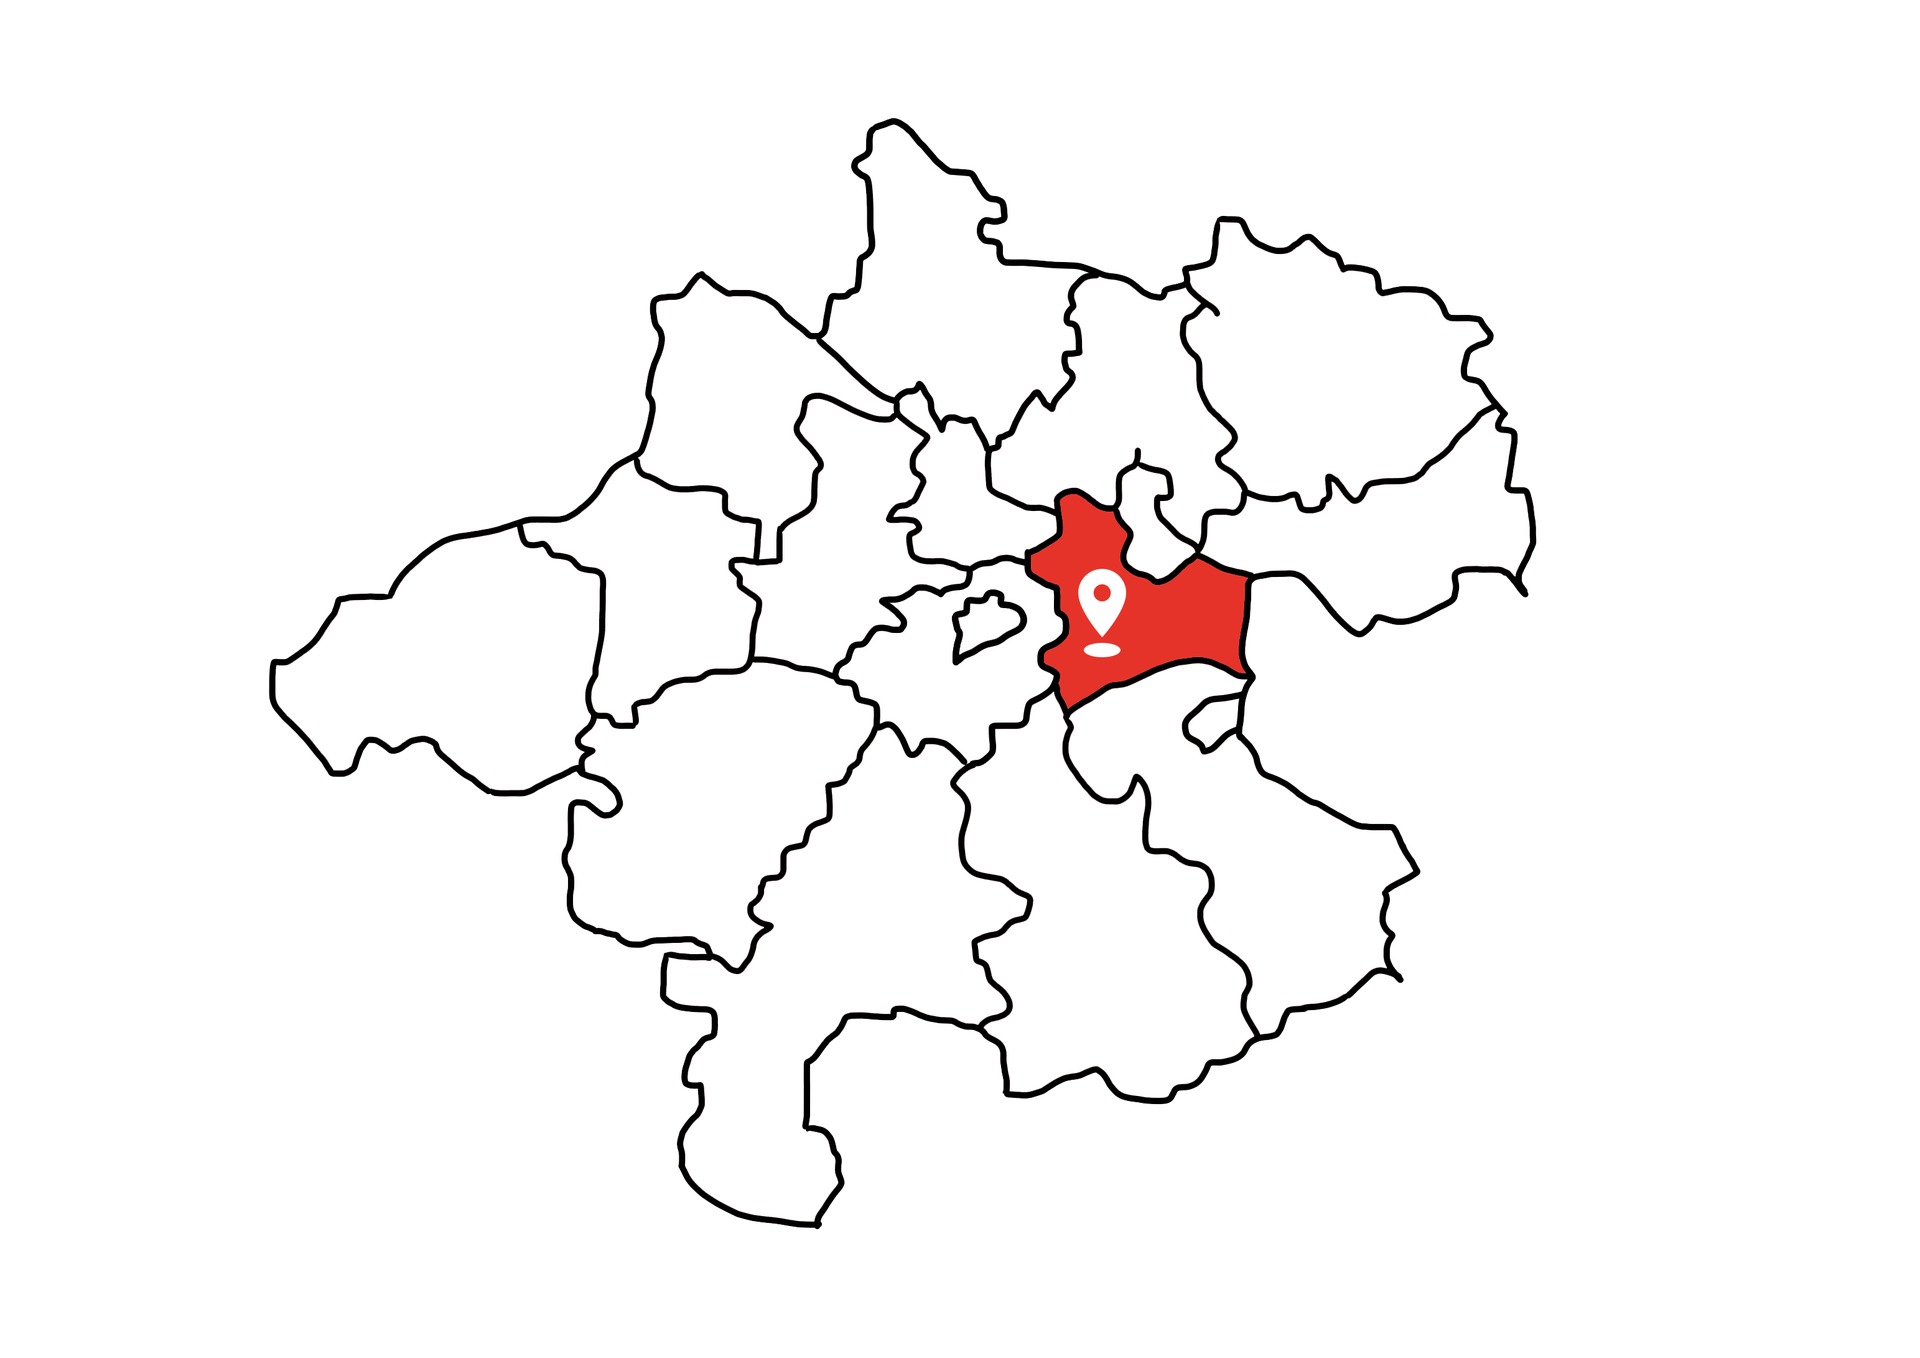 Eine Landkarte die Oberösterreich zeigt. Der Bezirk Linz-Land ist rot markiert. Die restlichen Bezirke sind weiß.